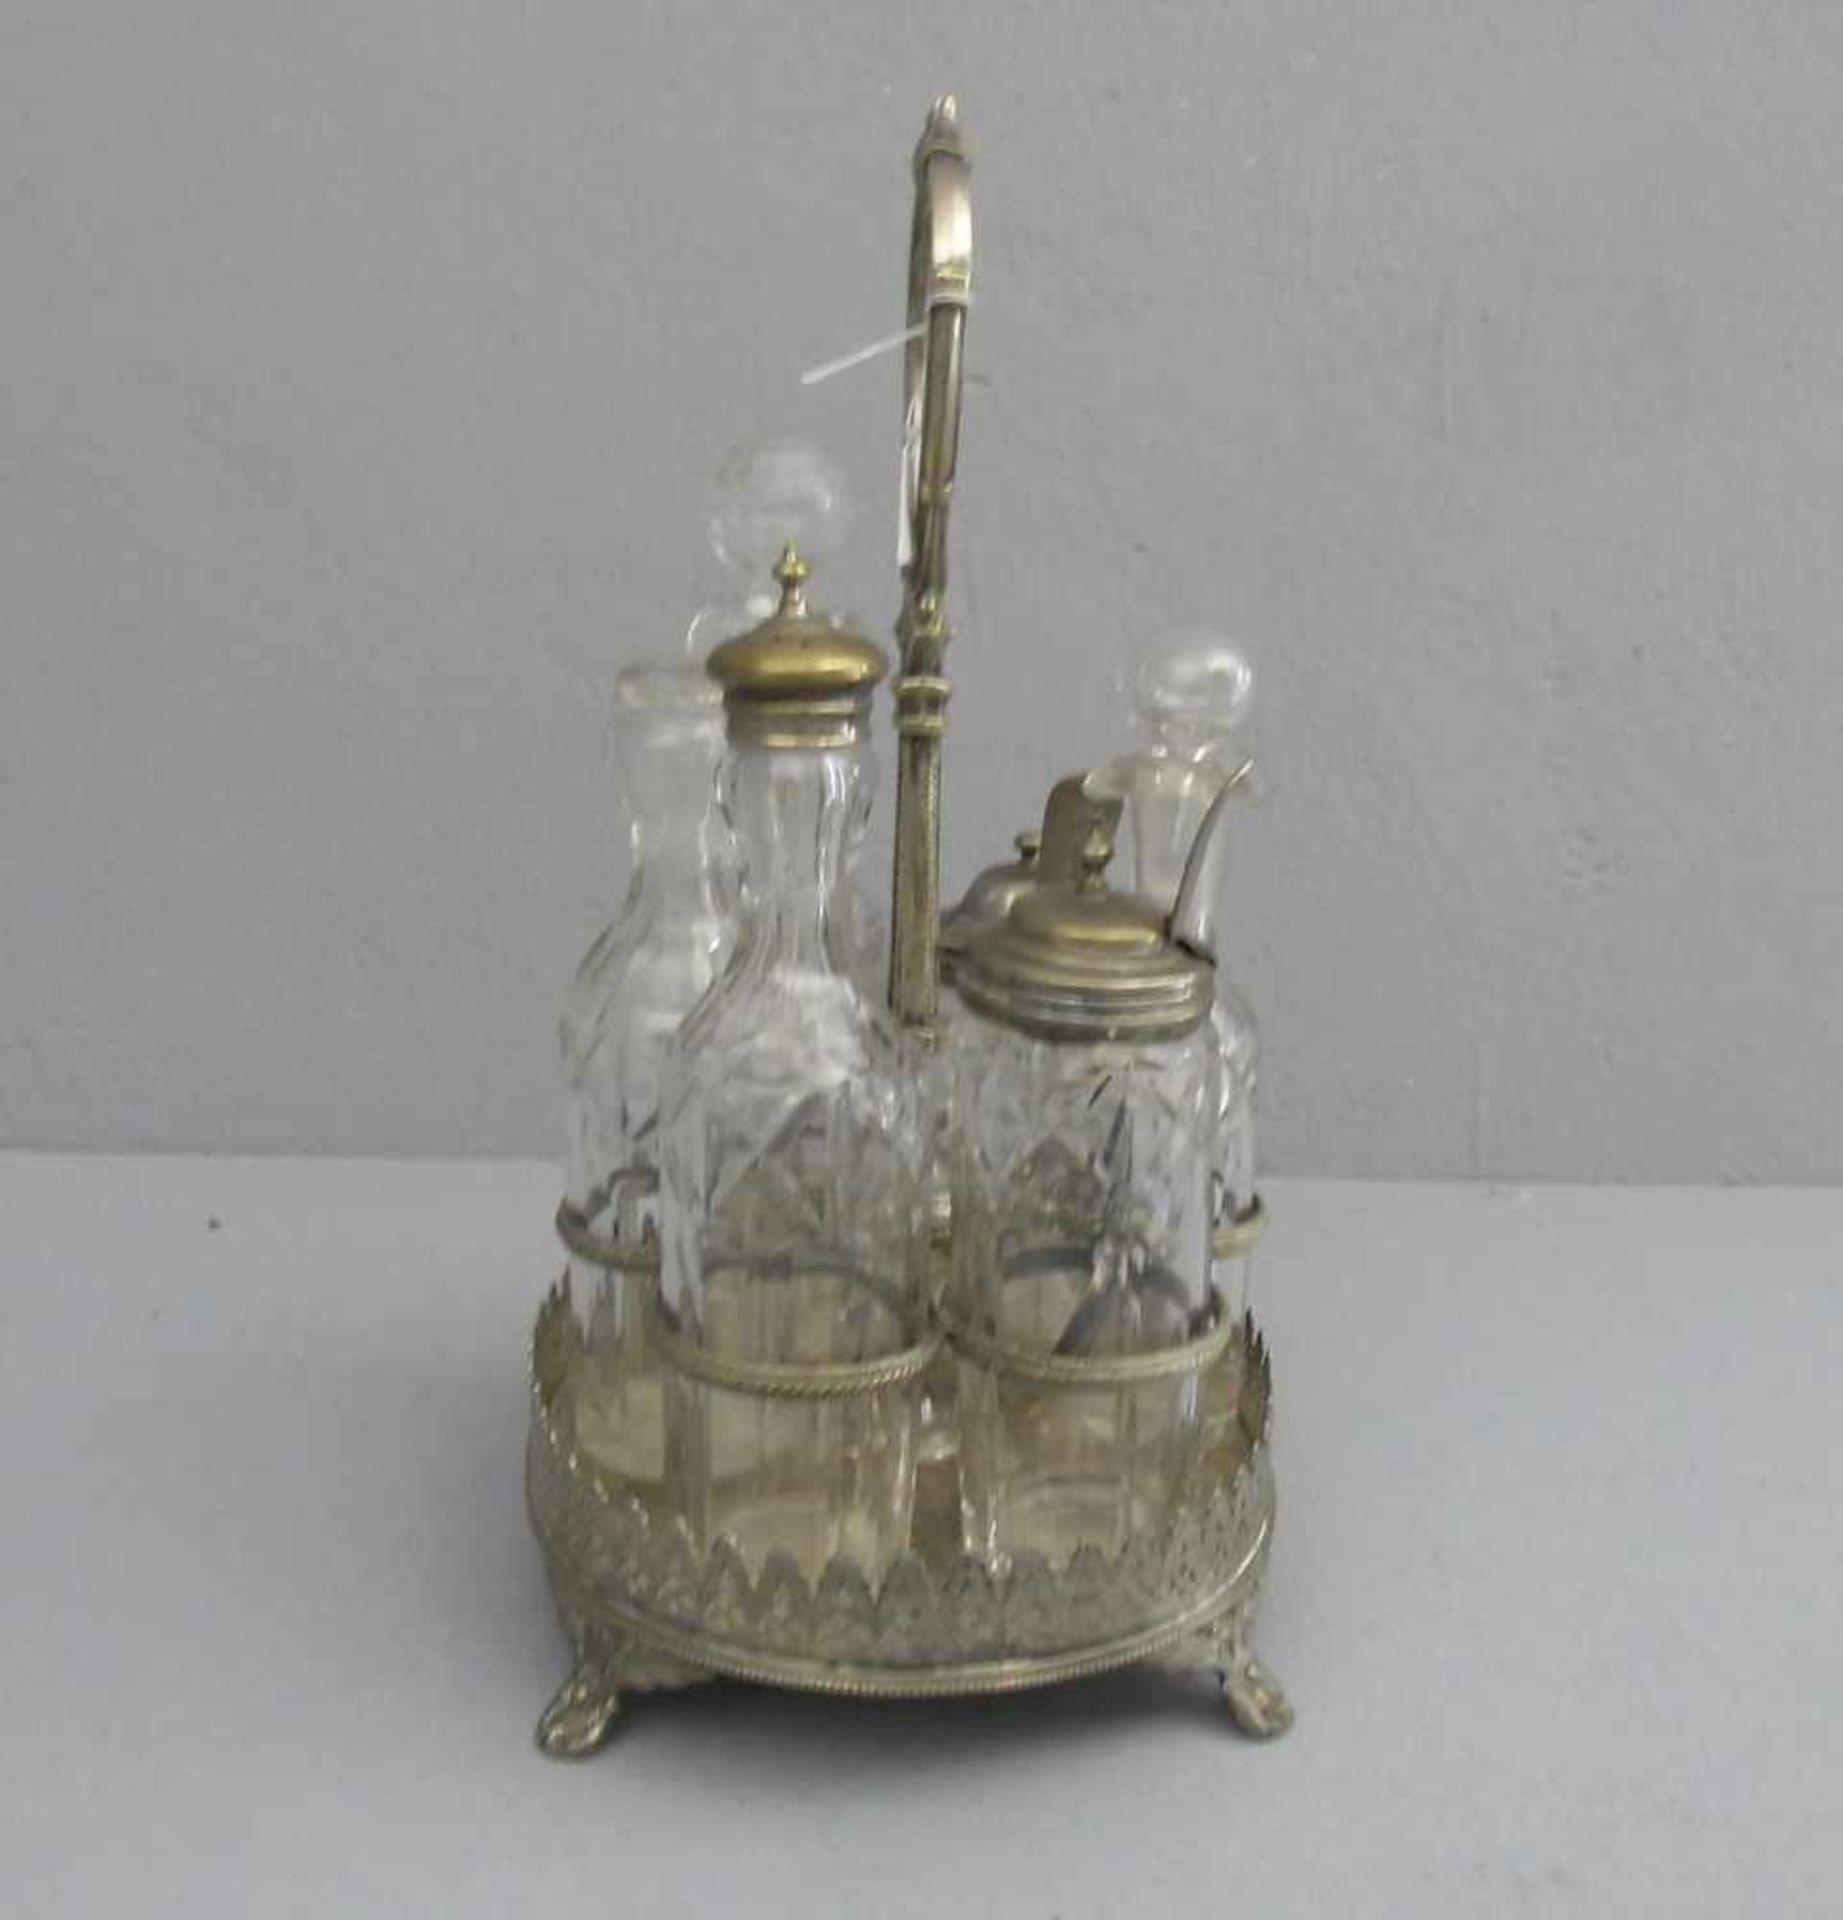 VERSILBERTE MENAGE MIT SECHS GLASBEHÄTERN, um 1900, England, versilbertes Metall und Glas, gemarkt - Image 2 of 4